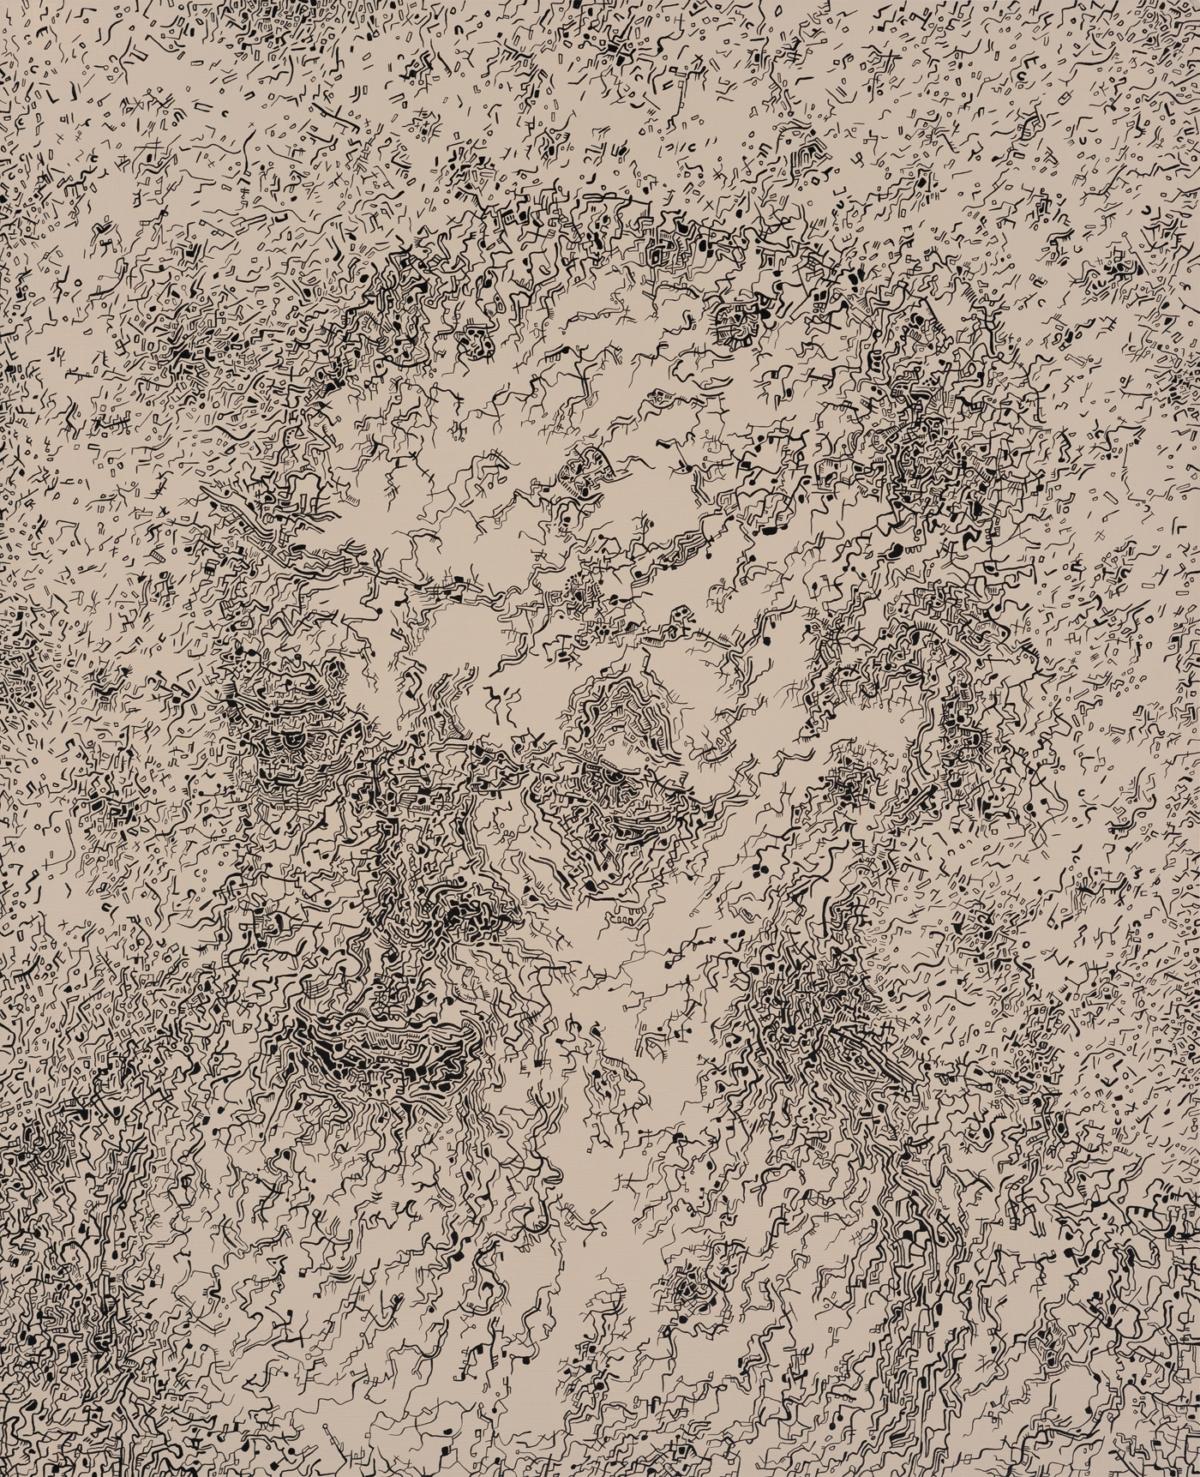 2017, Demokryt, akryl na pà¢tnie, 65 x 80 cm